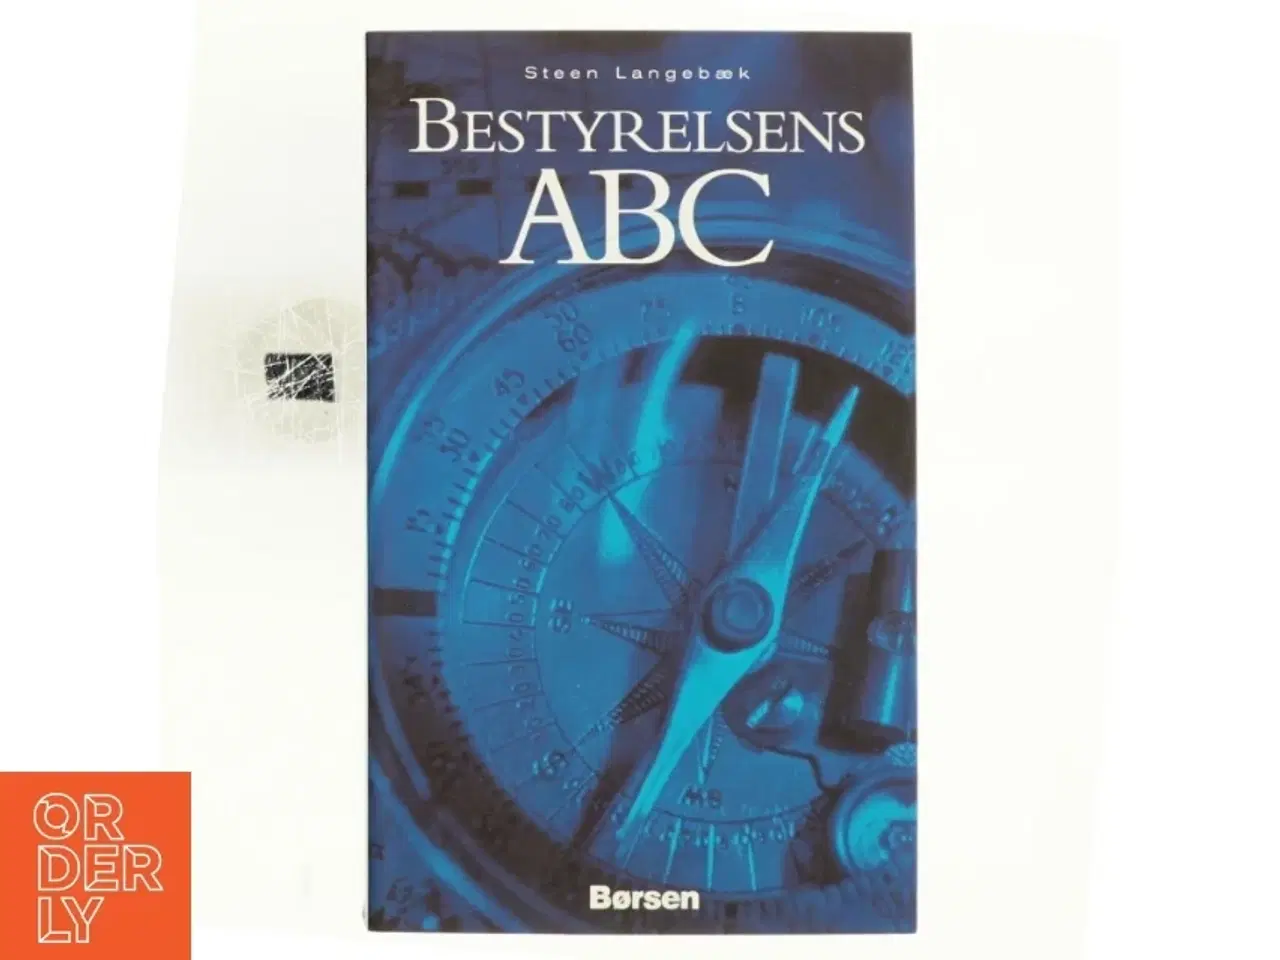 Billede 1 - Bestyrelsens ABC af Steen Langebæk (Bog)